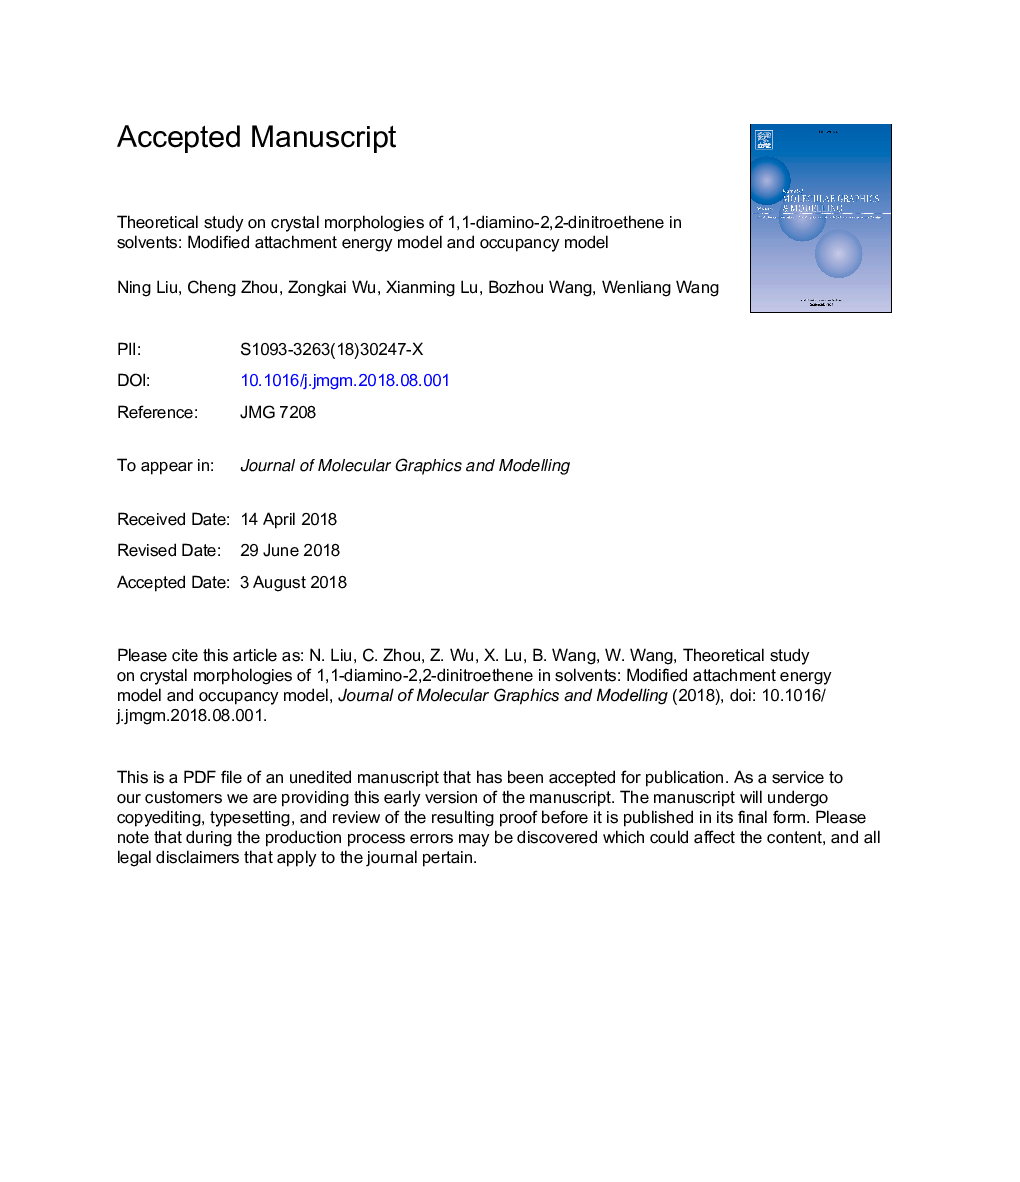 مطالعه نظری بر مورفولوژی کریستال های 1،1-دیامینو-2،2-دینیتروتن در حلال ها: مدل انرژی وابسته تغییر یافته و مدل اشغال